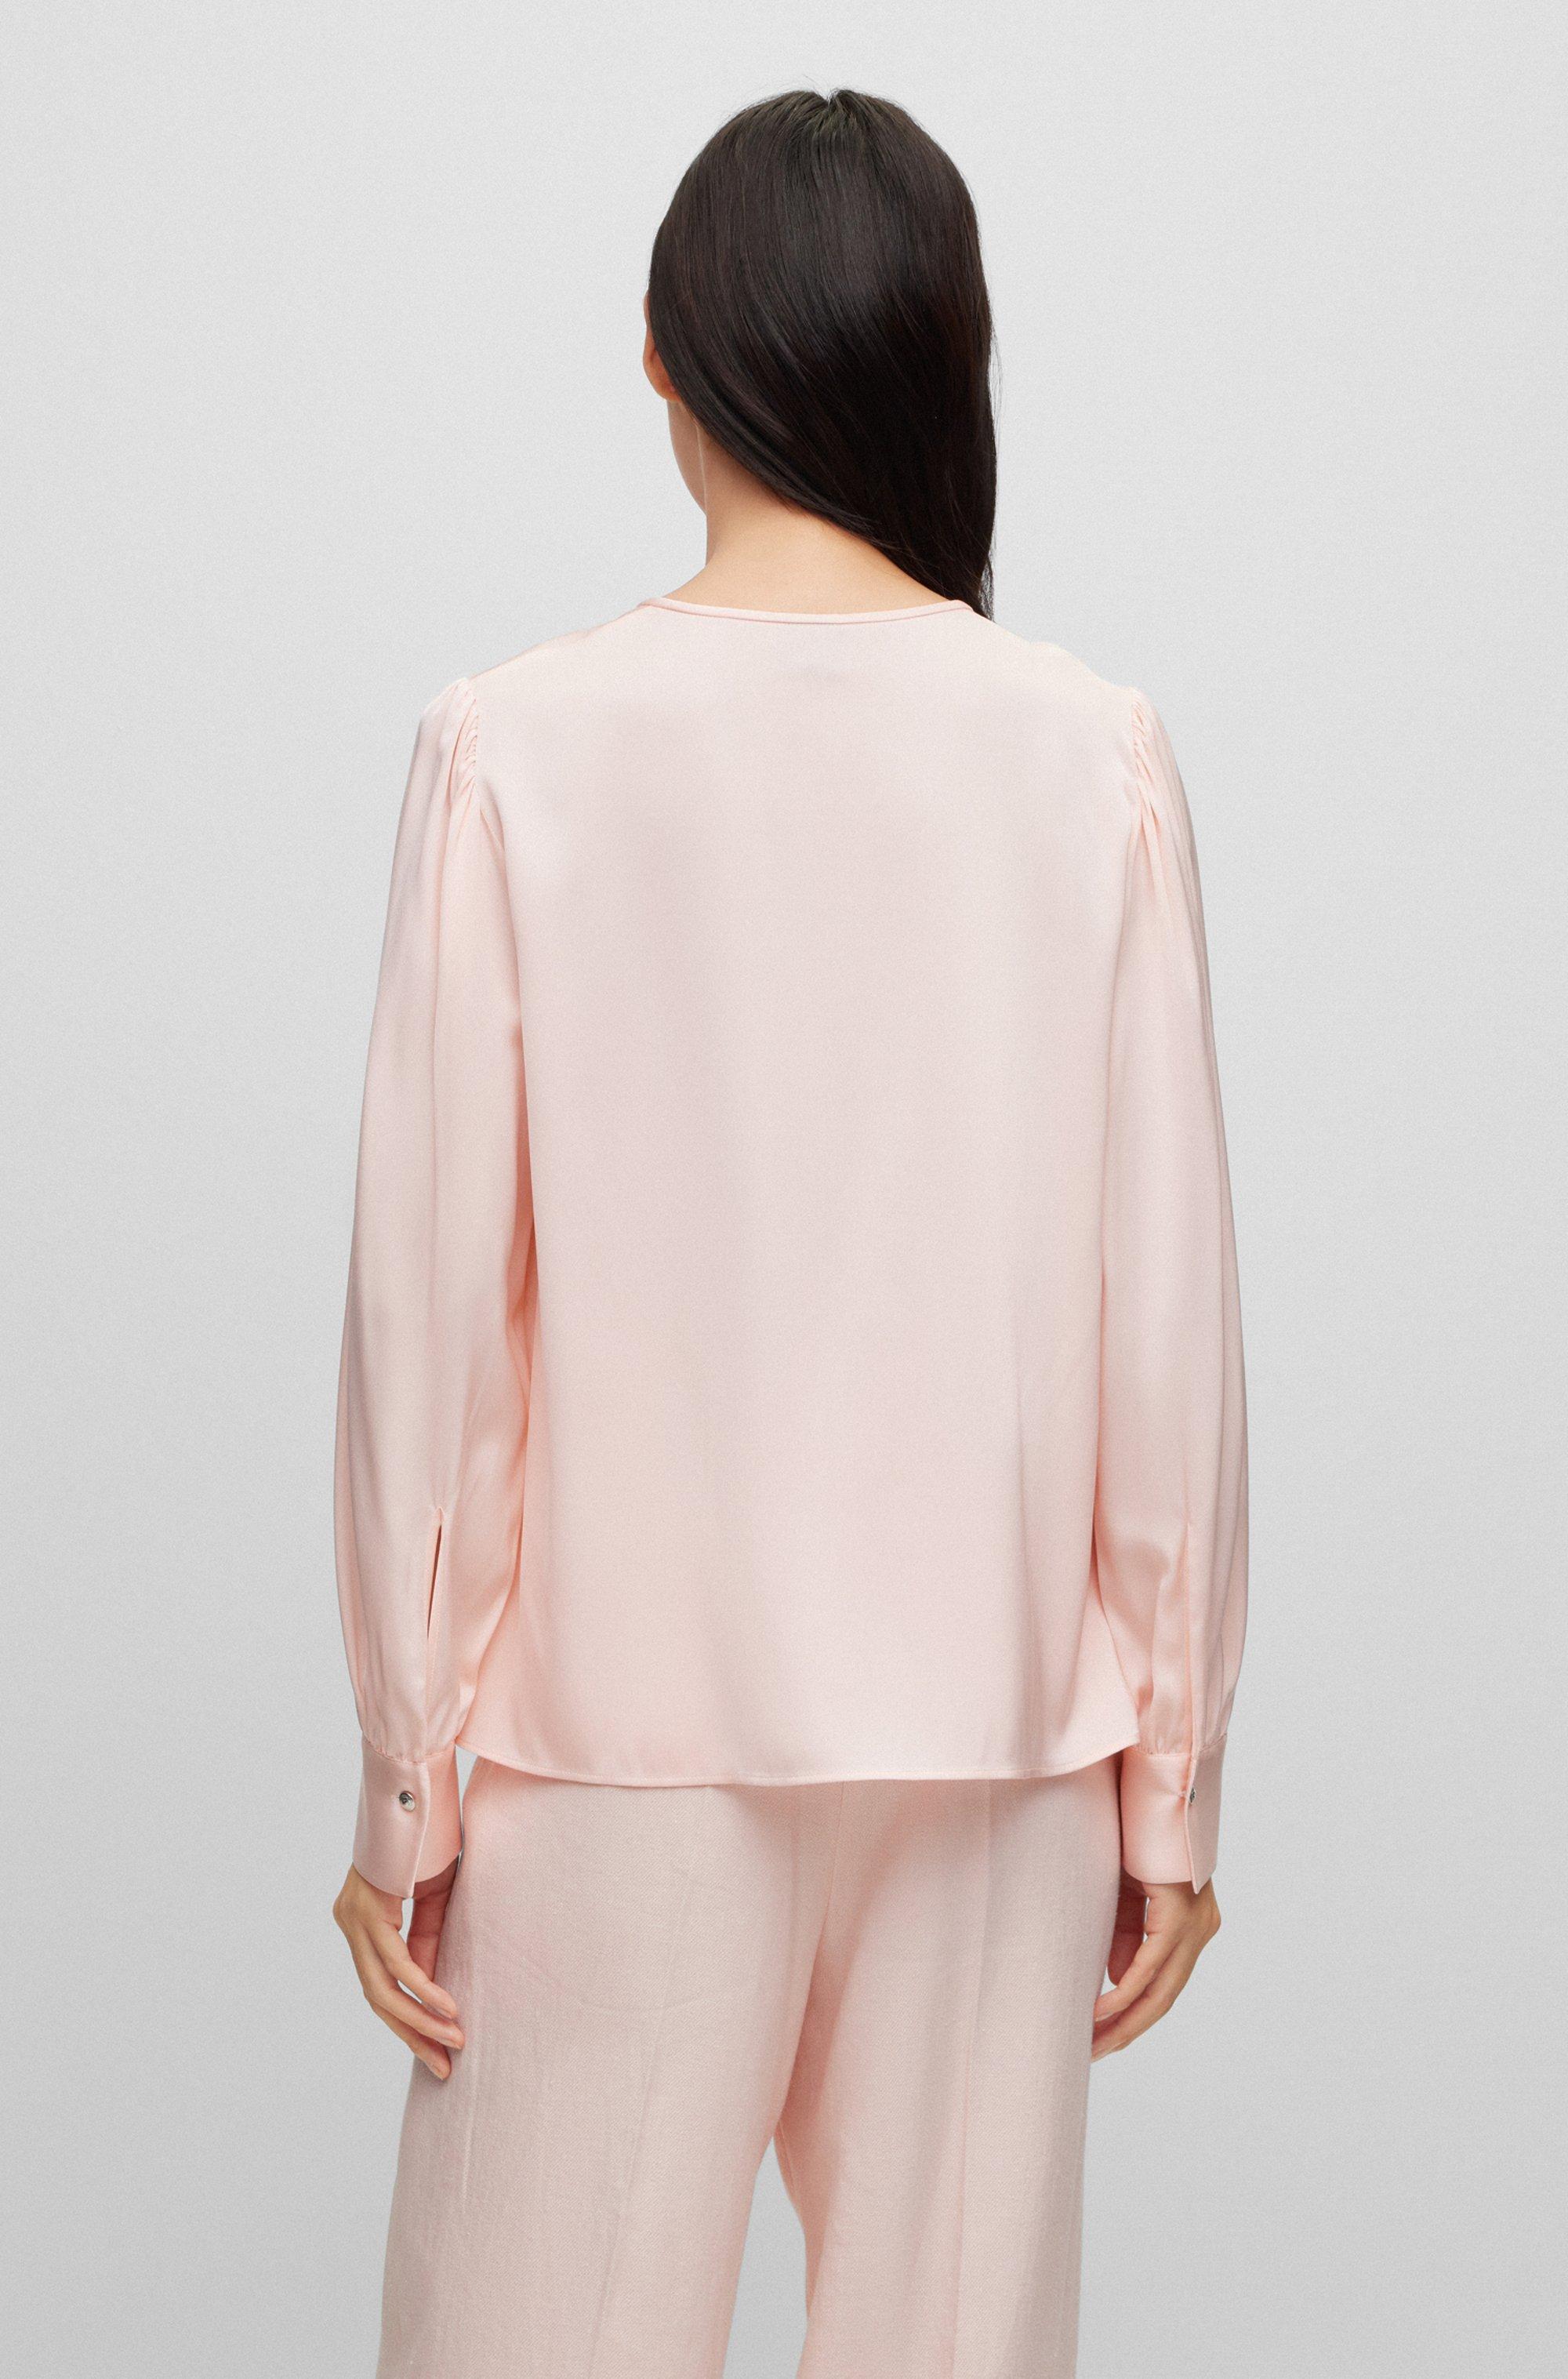 Lucht Caroline Uitdrukkelijk BOSS by HUGO BOSS Long-sleeved Top In Stretch Silk With Keyhole Neckline in  Pink | Lyst